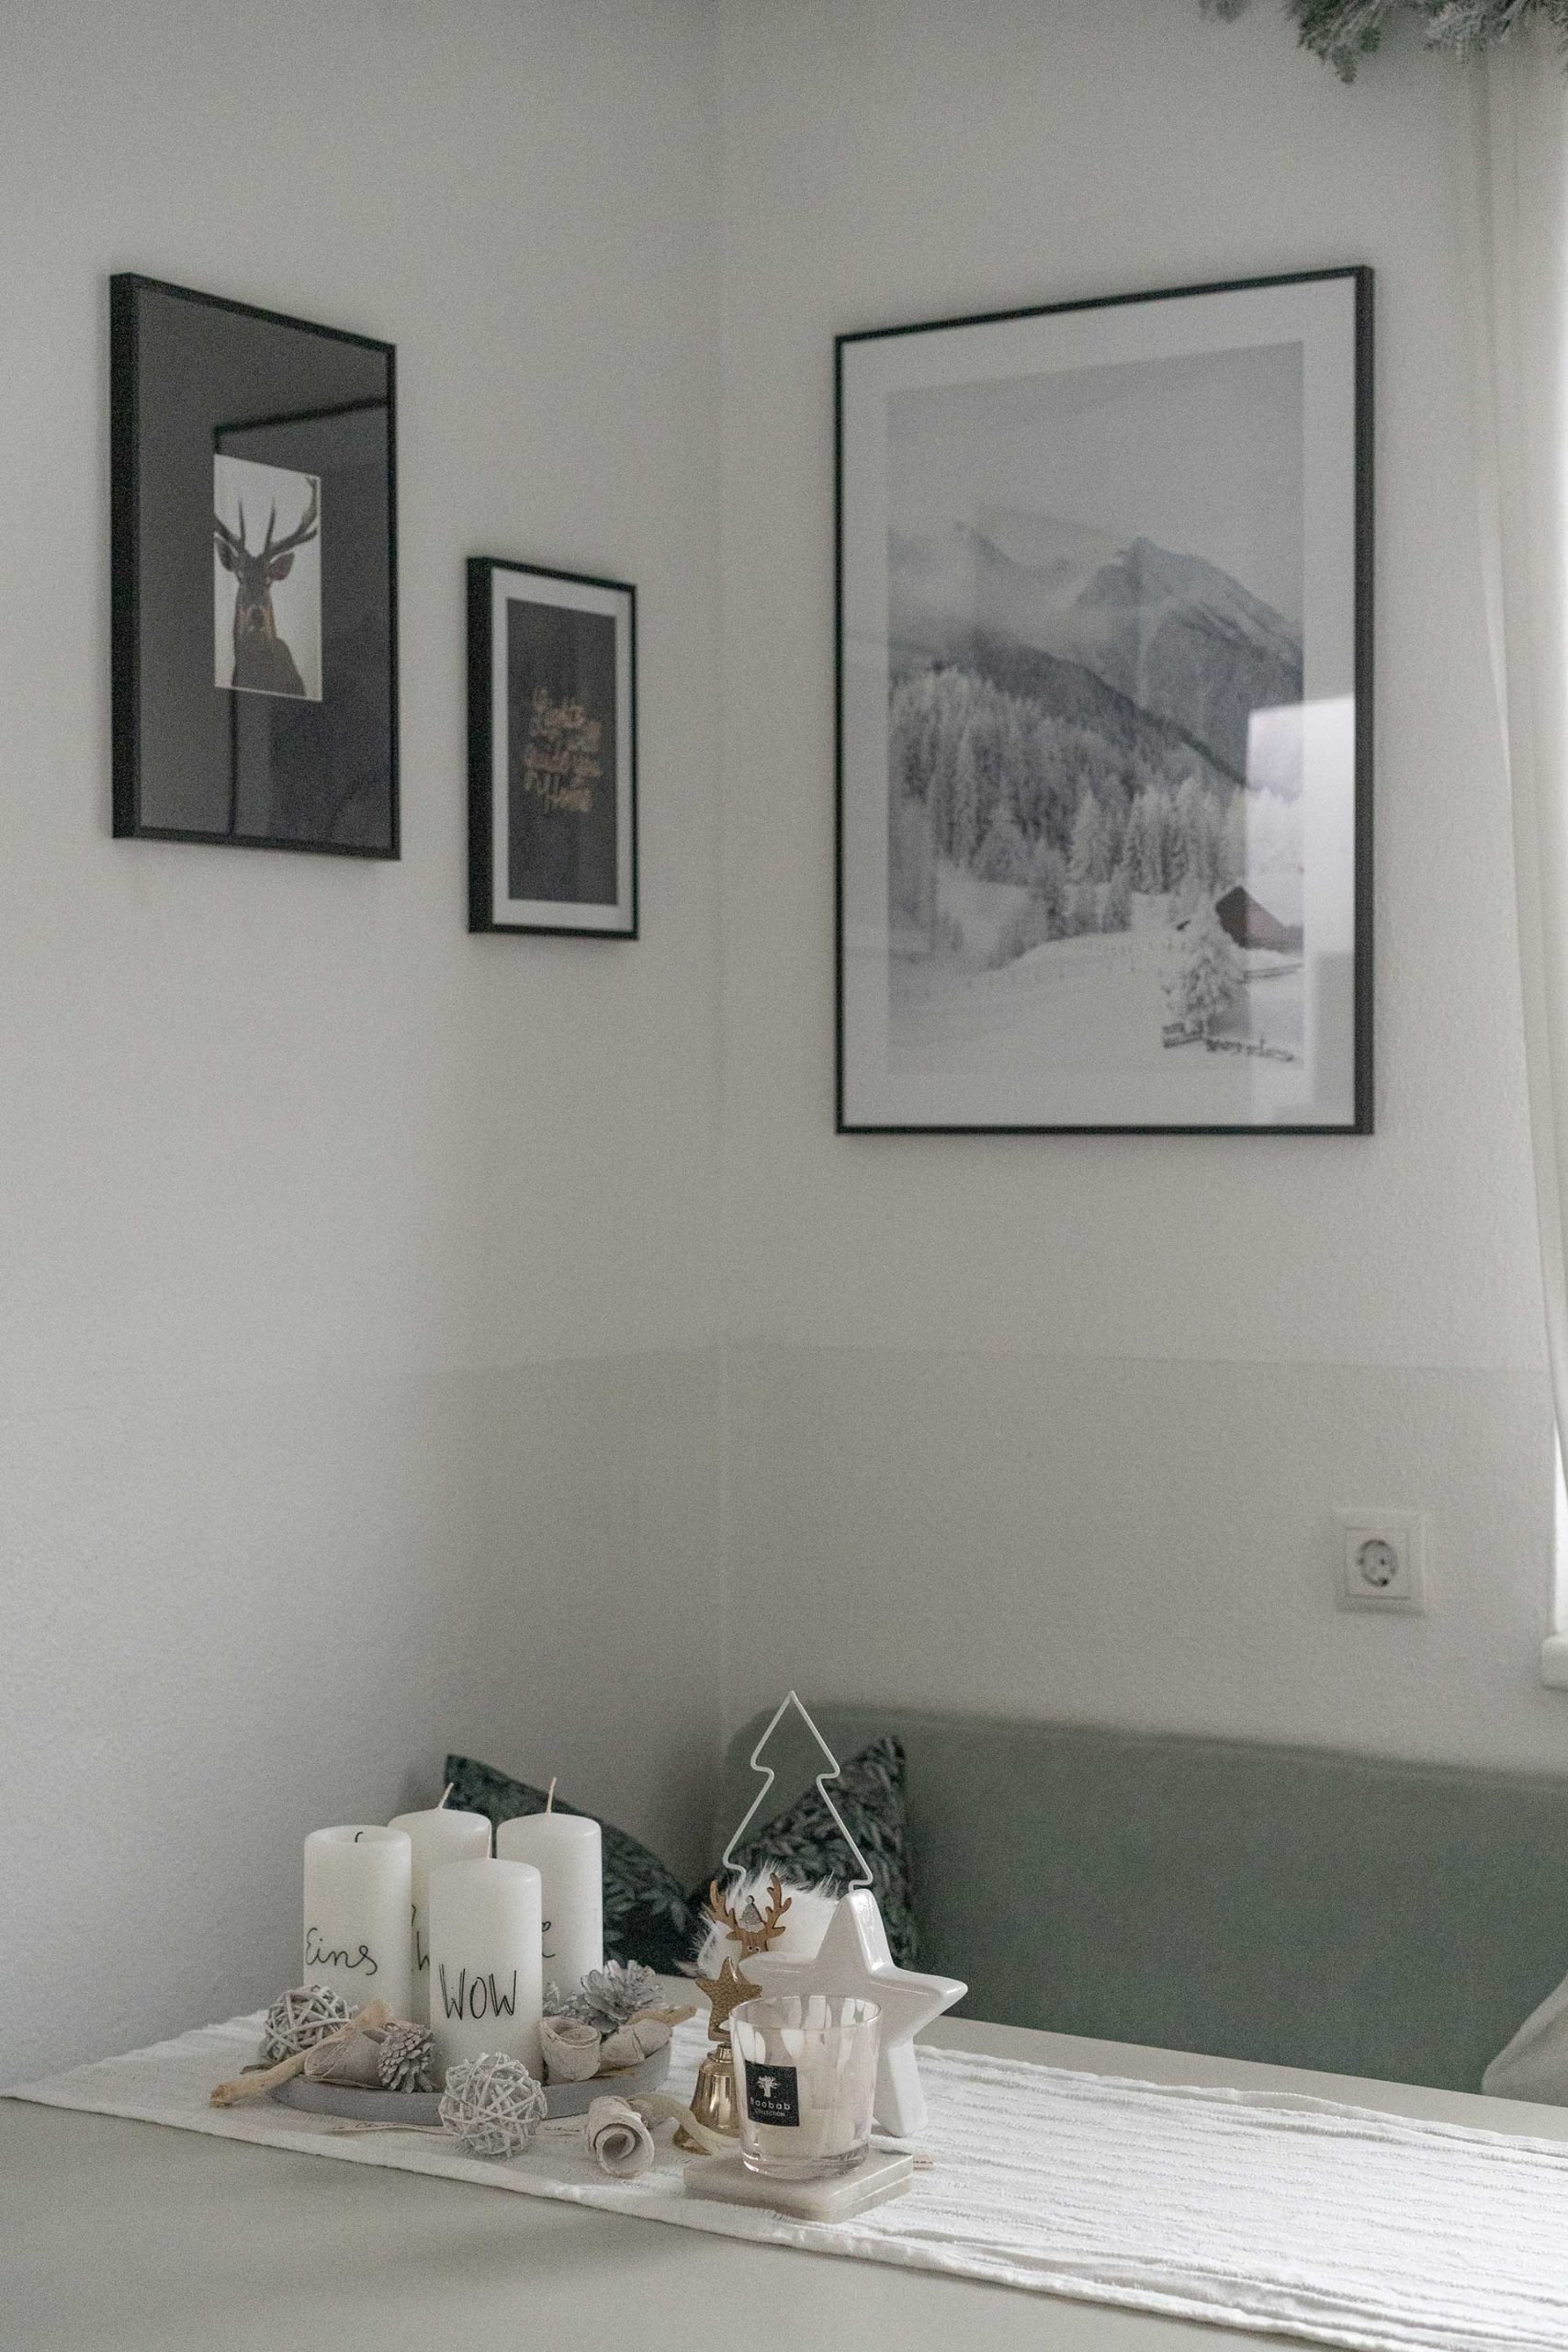 Meine Tipps für schöne und einfache Weihnachtsdeko im Wohnzimmer findest du jetzt am Interior Blog. Vom Christbaumschmuck angefangen bis hin zu Lichthäusern, Textilien und Papiersternen ist alles mit dabei.